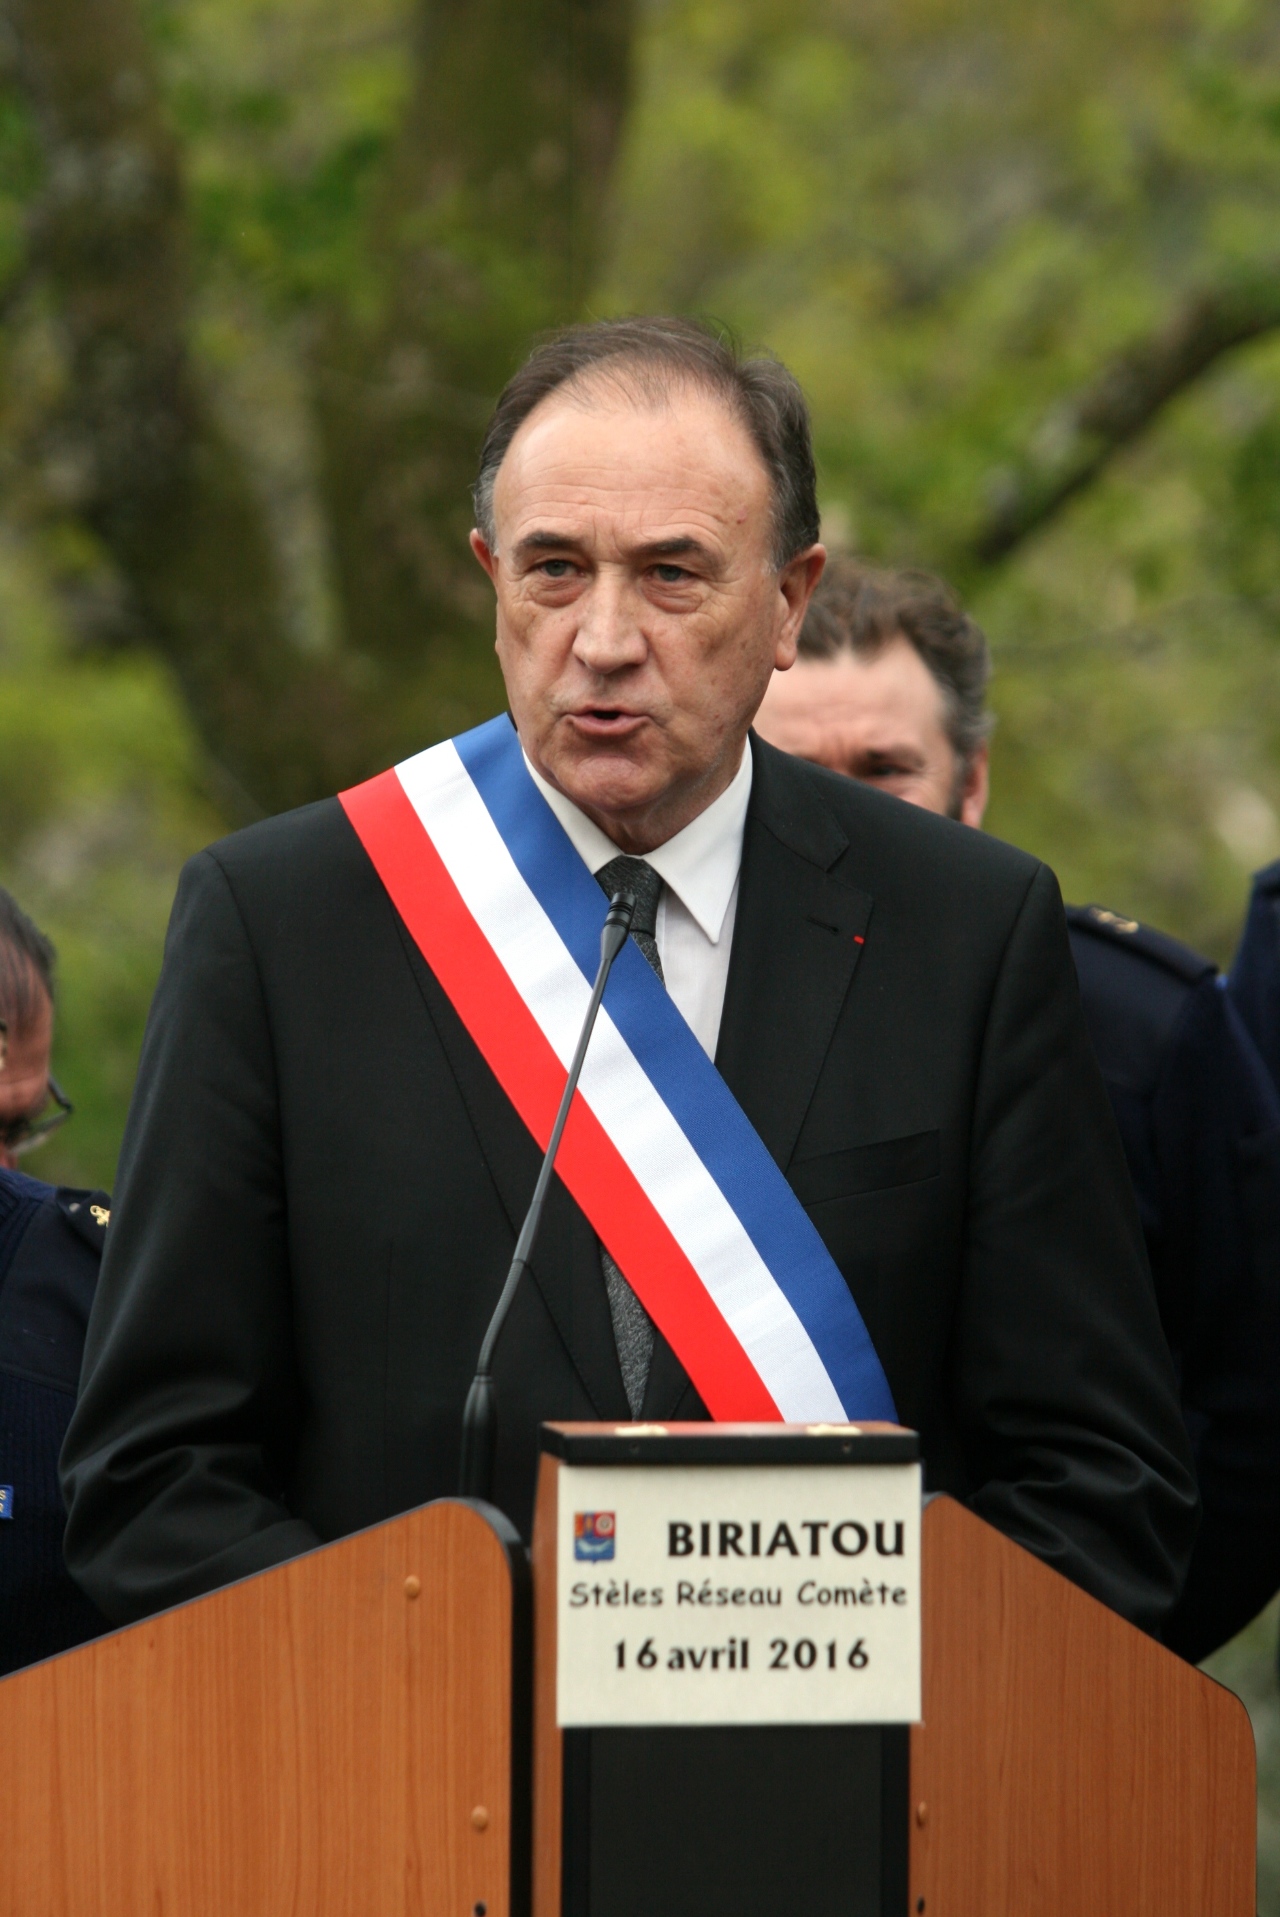 Michel Hiriart, maire de Biriatou, offre un discours riche de l'histoire de sa commune